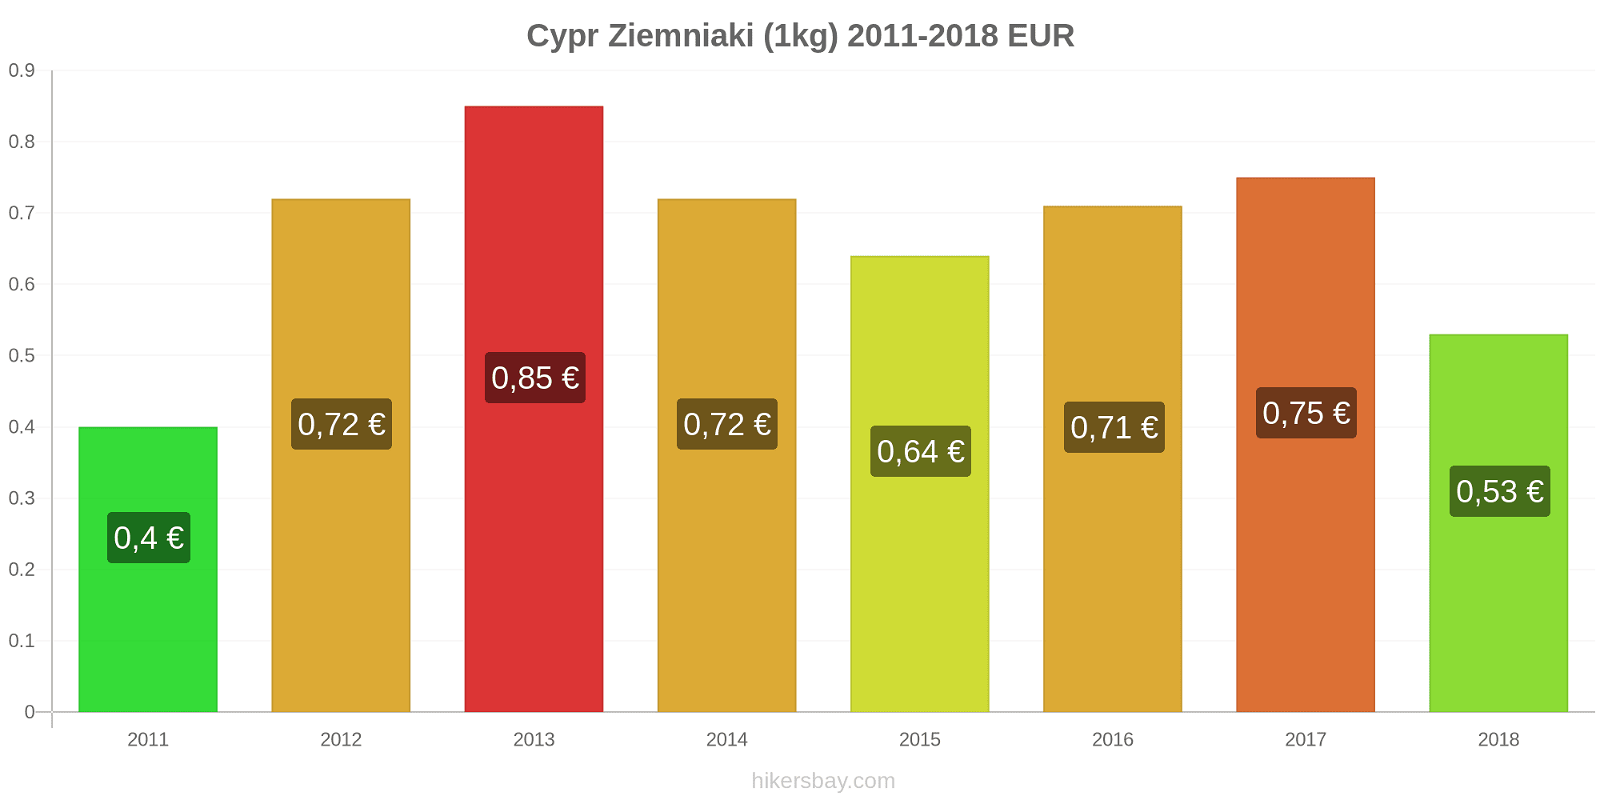 Cypr zmiany cen Ziemniaki (1kg) hikersbay.com